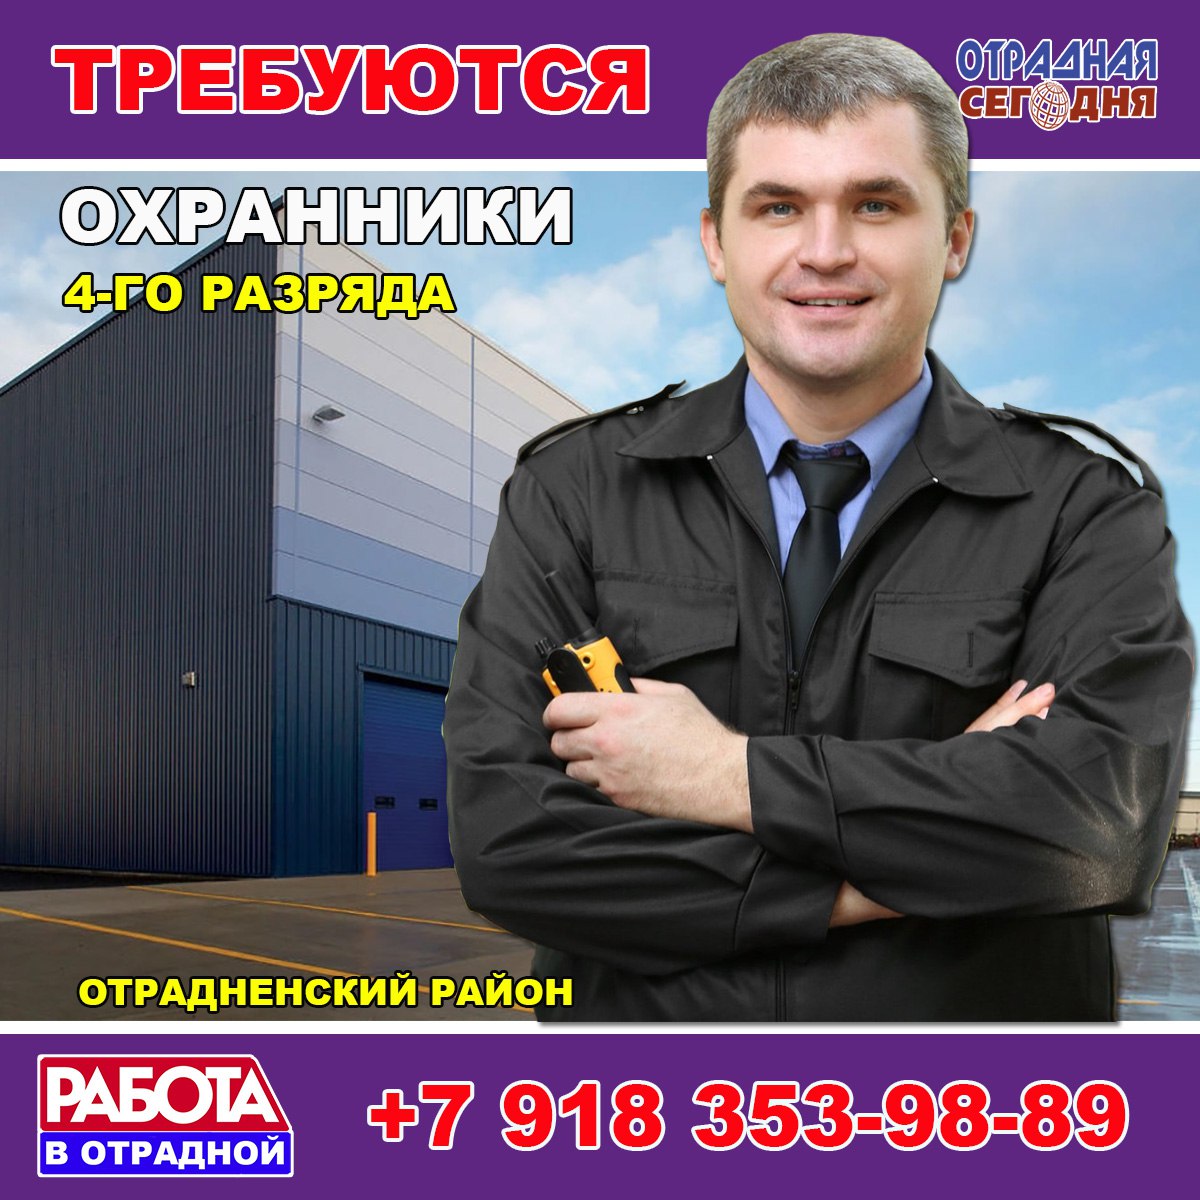 Работа охрана сочи. Охранник 4го разряда Луганск. Работу охрану требуется. Работа во Владивостоке охранником. Охранники вакансии в Чите.